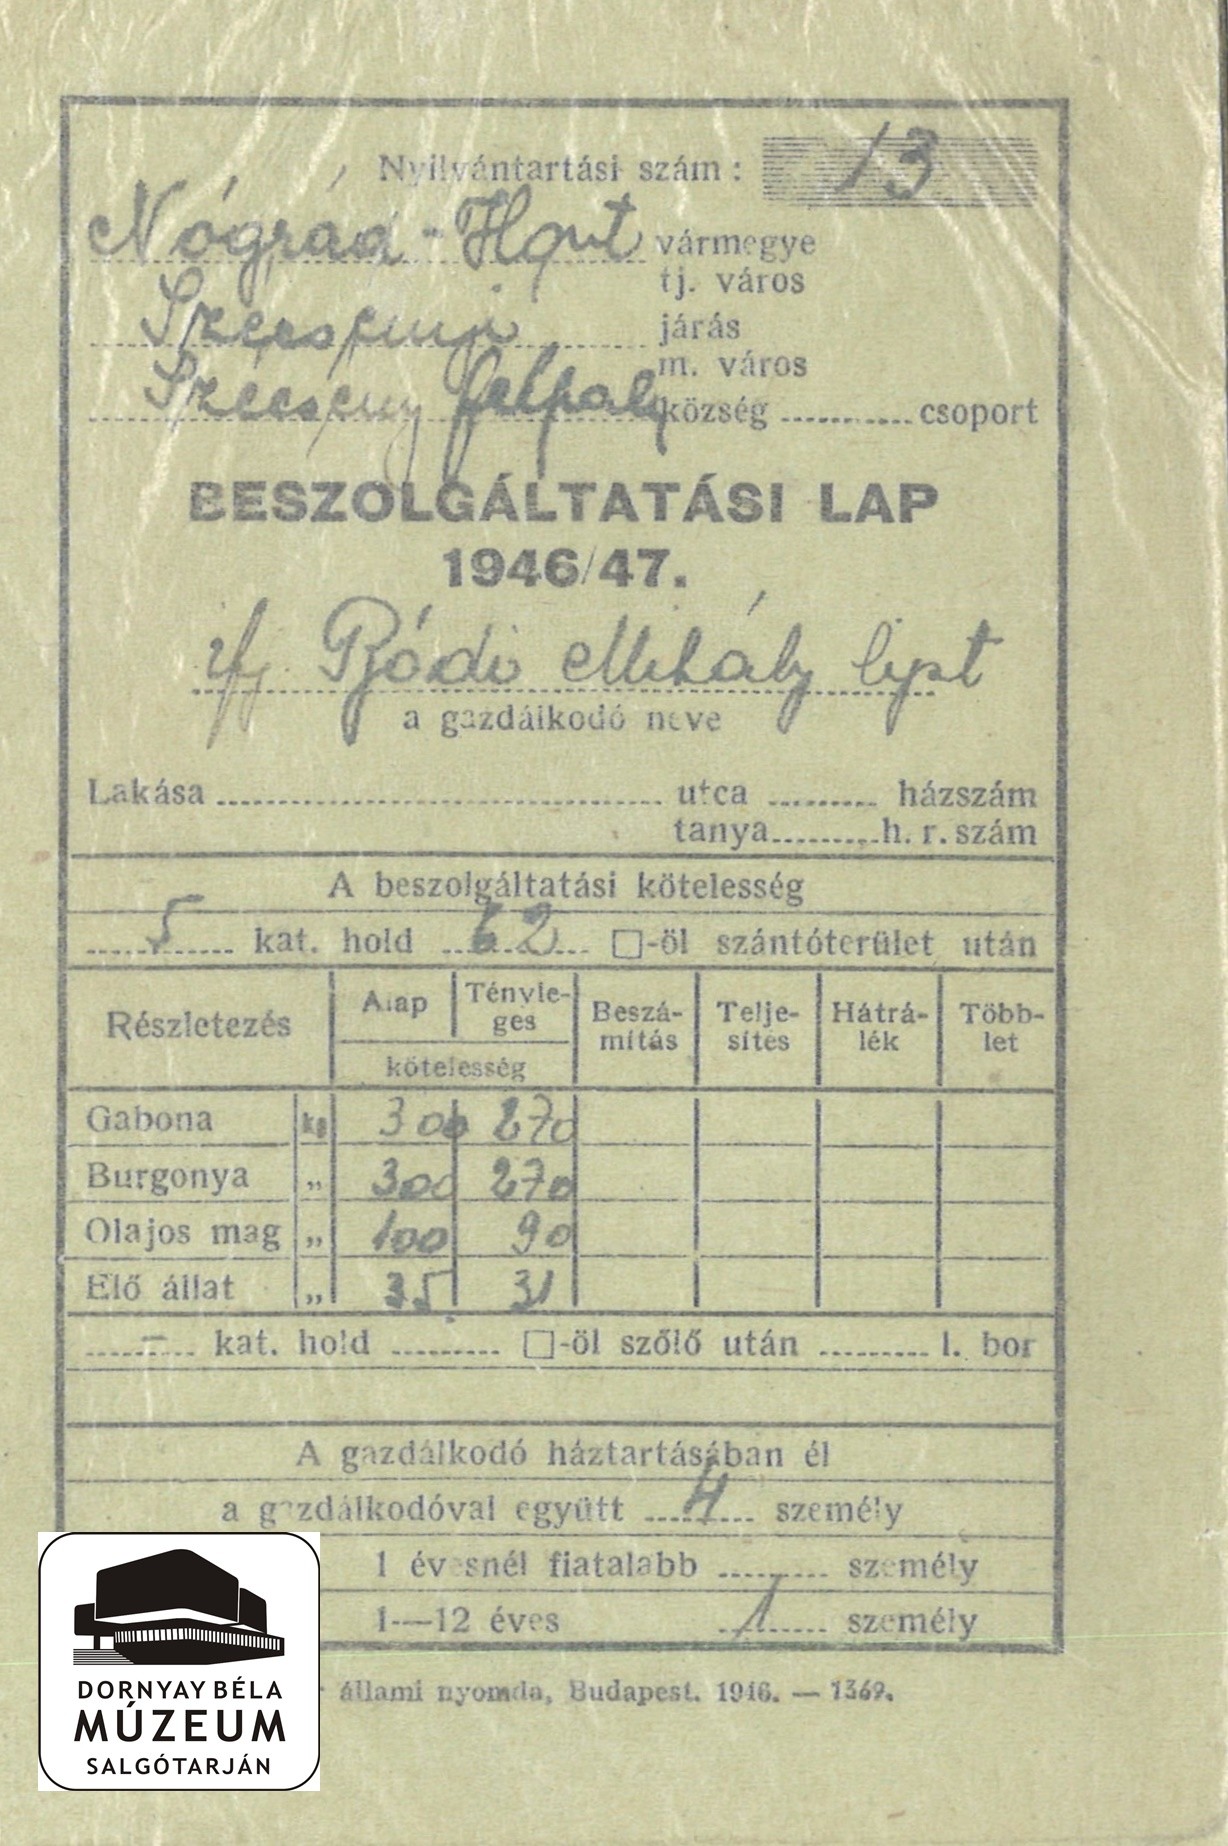 Beszolgáltatási lap. Ifj. Bódi Mihály, Szécsényfelfalu (Dornyay Béla Múzeum, Salgótarján CC BY-NC-SA)